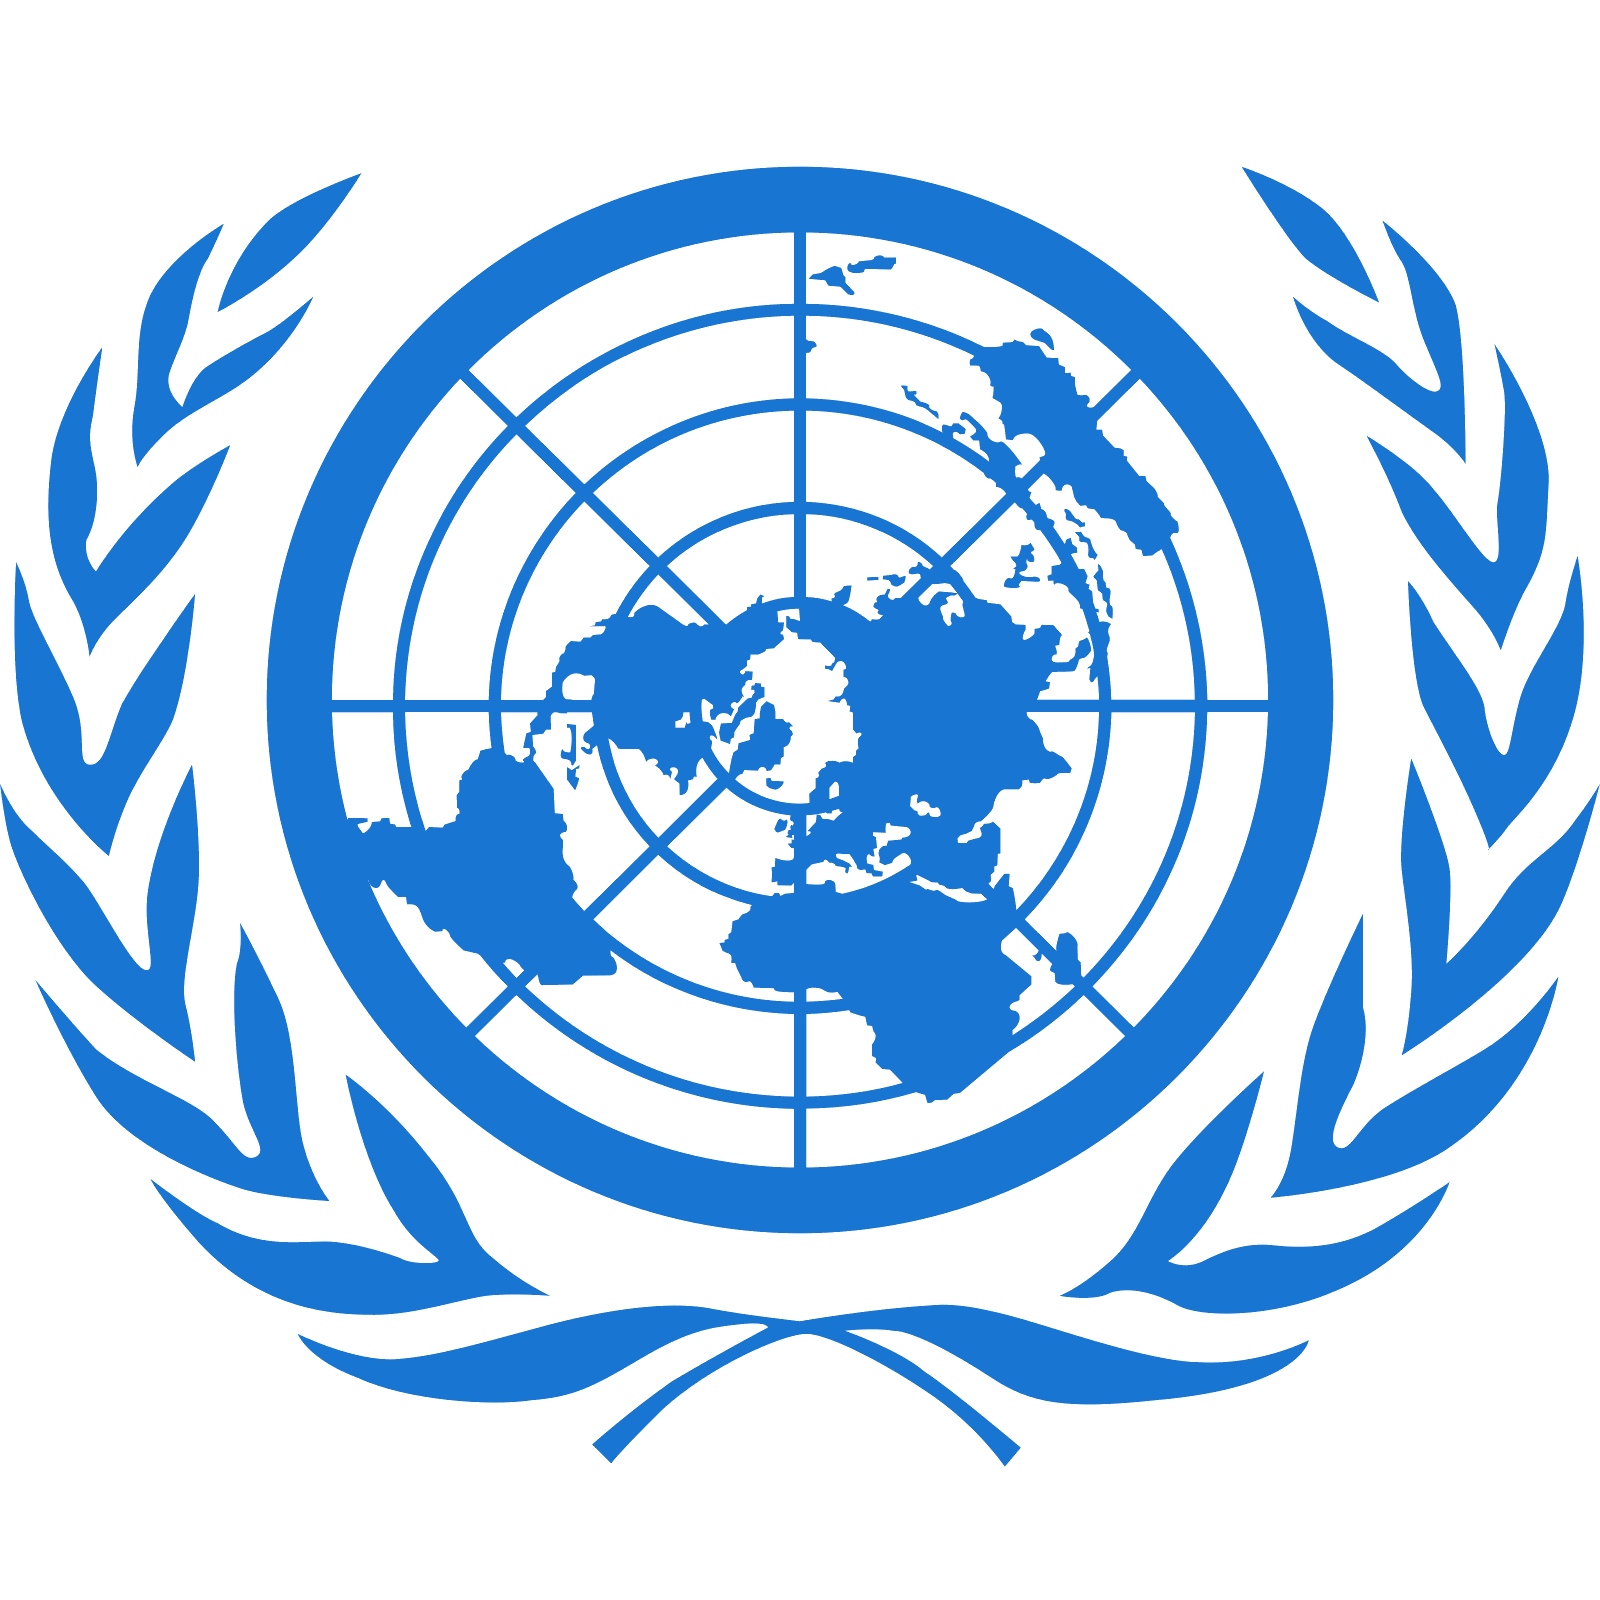 United Nations Logo - United Nations Logo Vector Wwwpixsharkcom Images Logo Image - Free ...